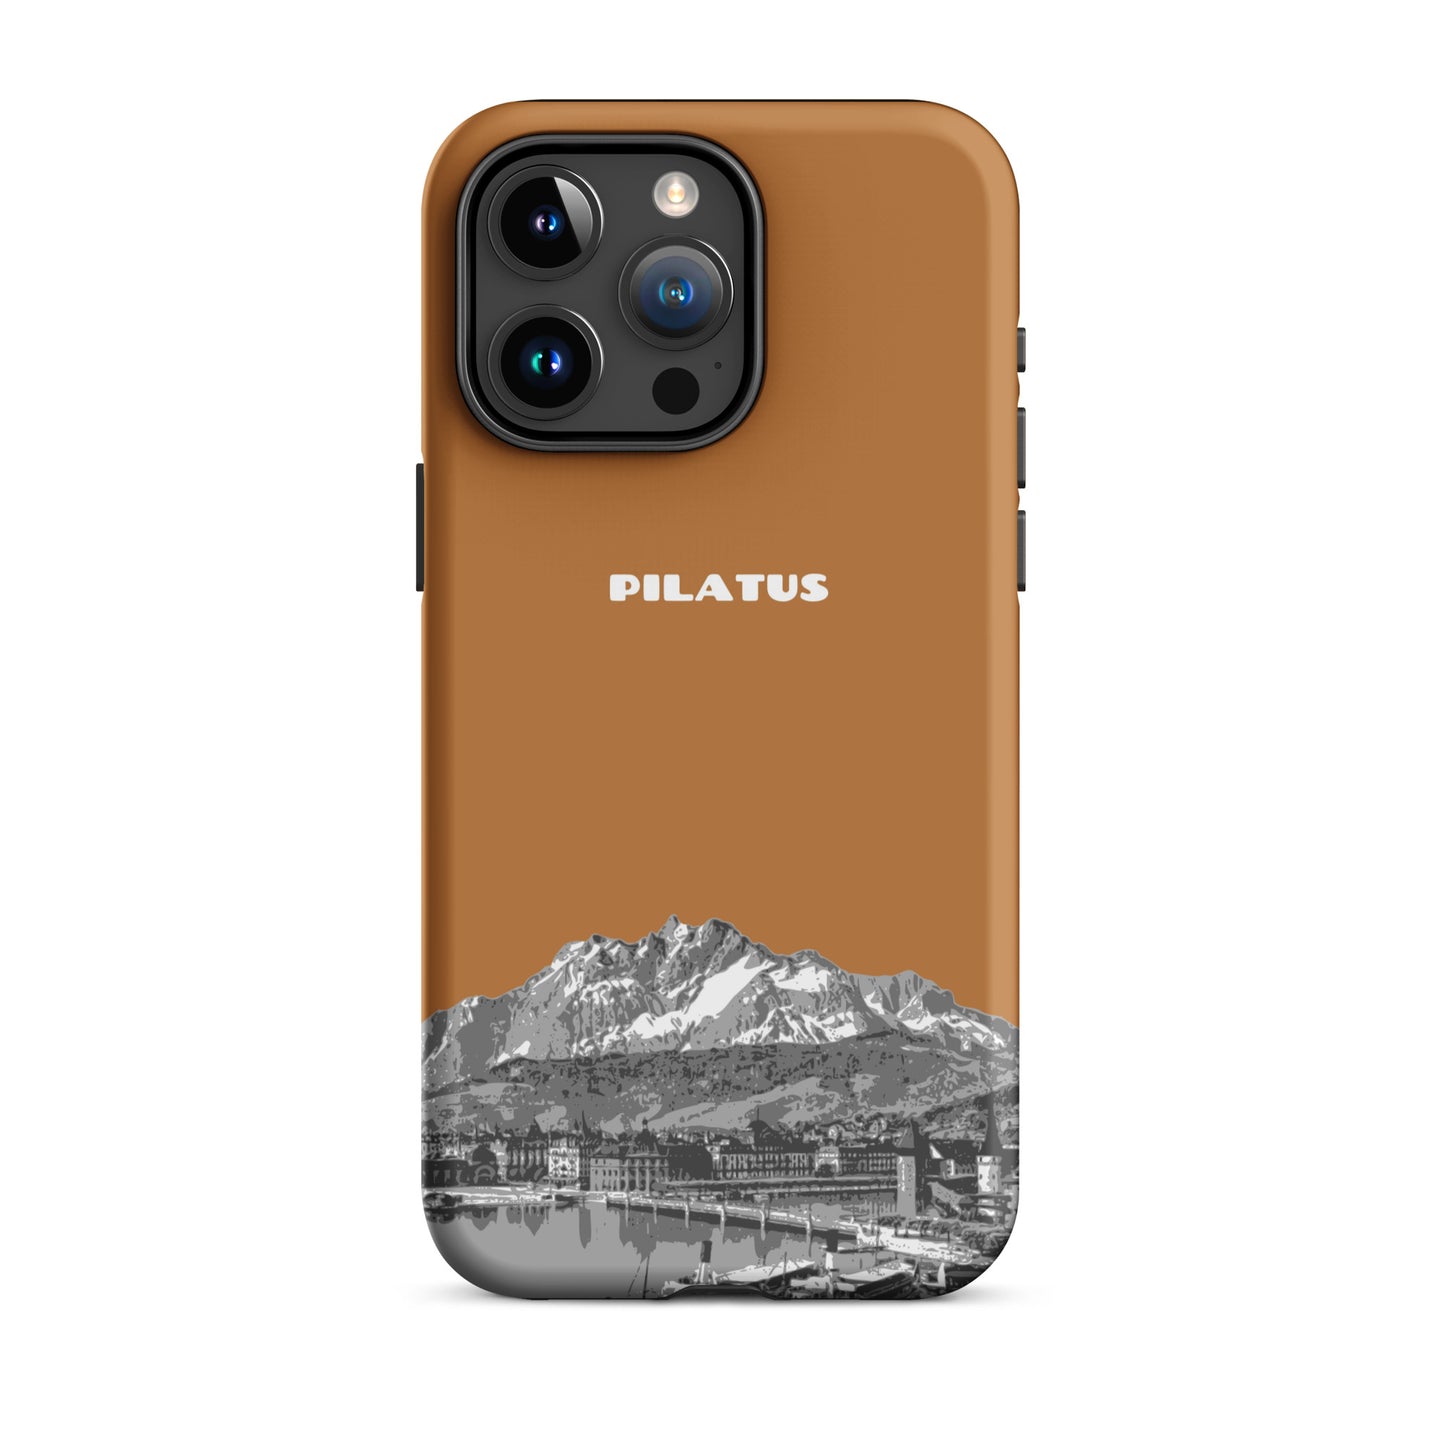 iPhone Case - Pilatus - Kupfer